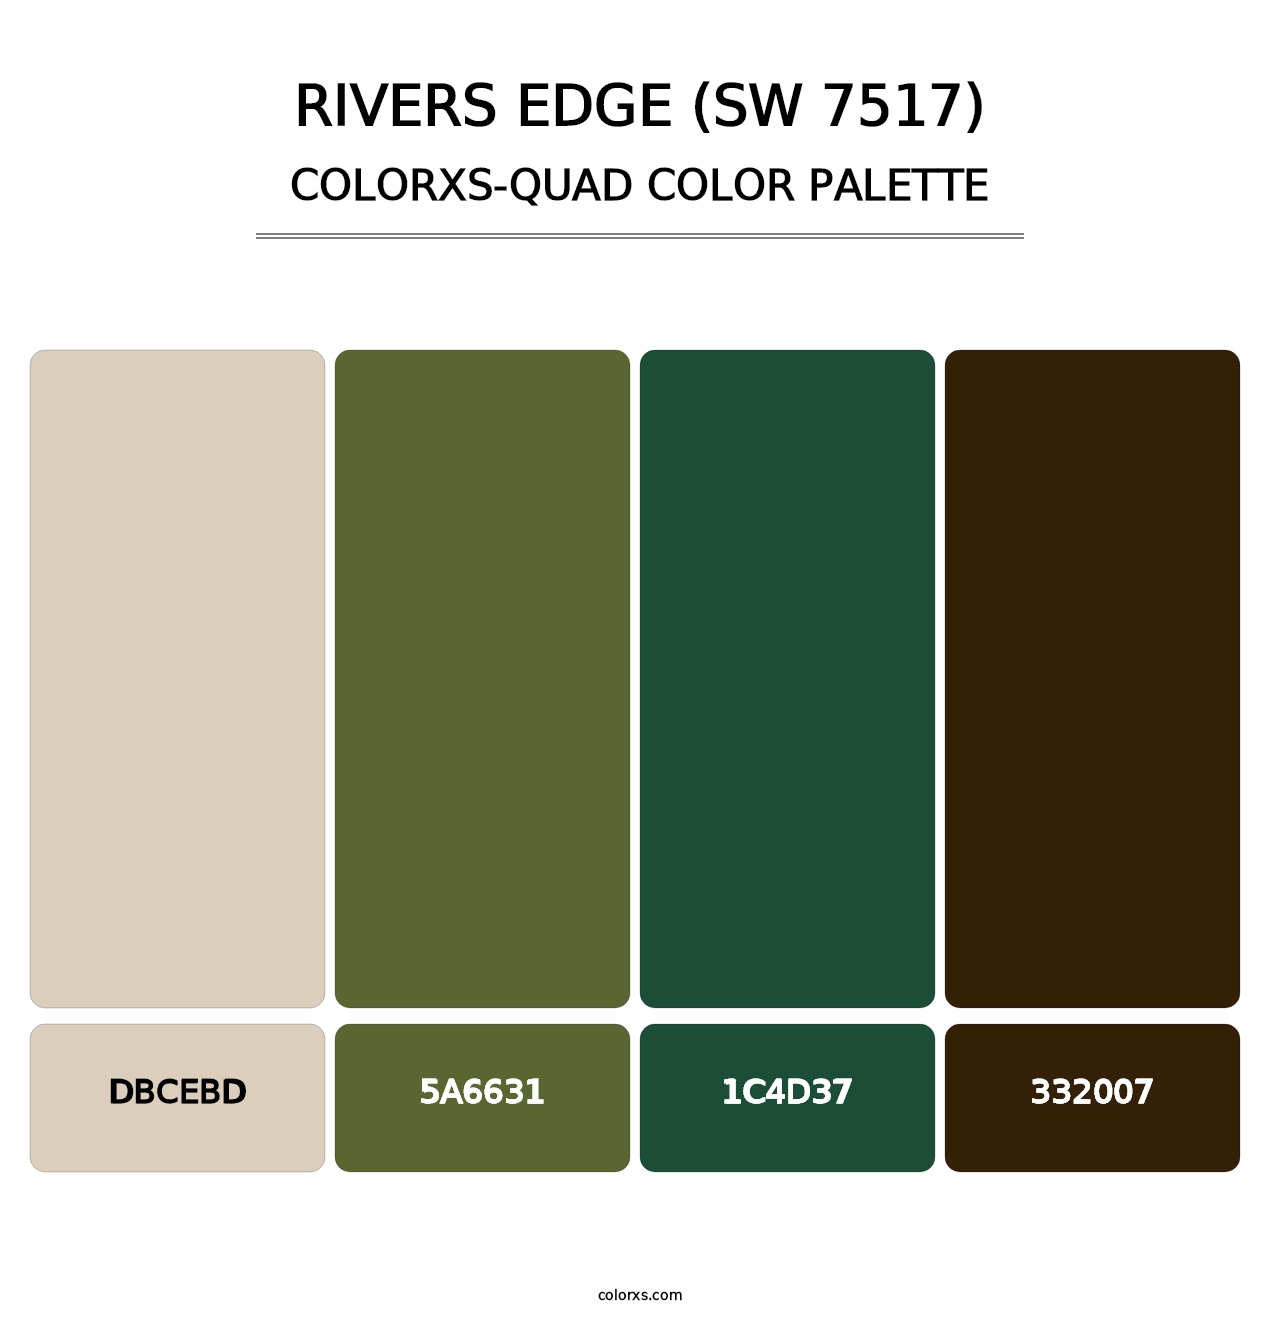 Rivers Edge (SW 7517) - Colorxs Quad Palette